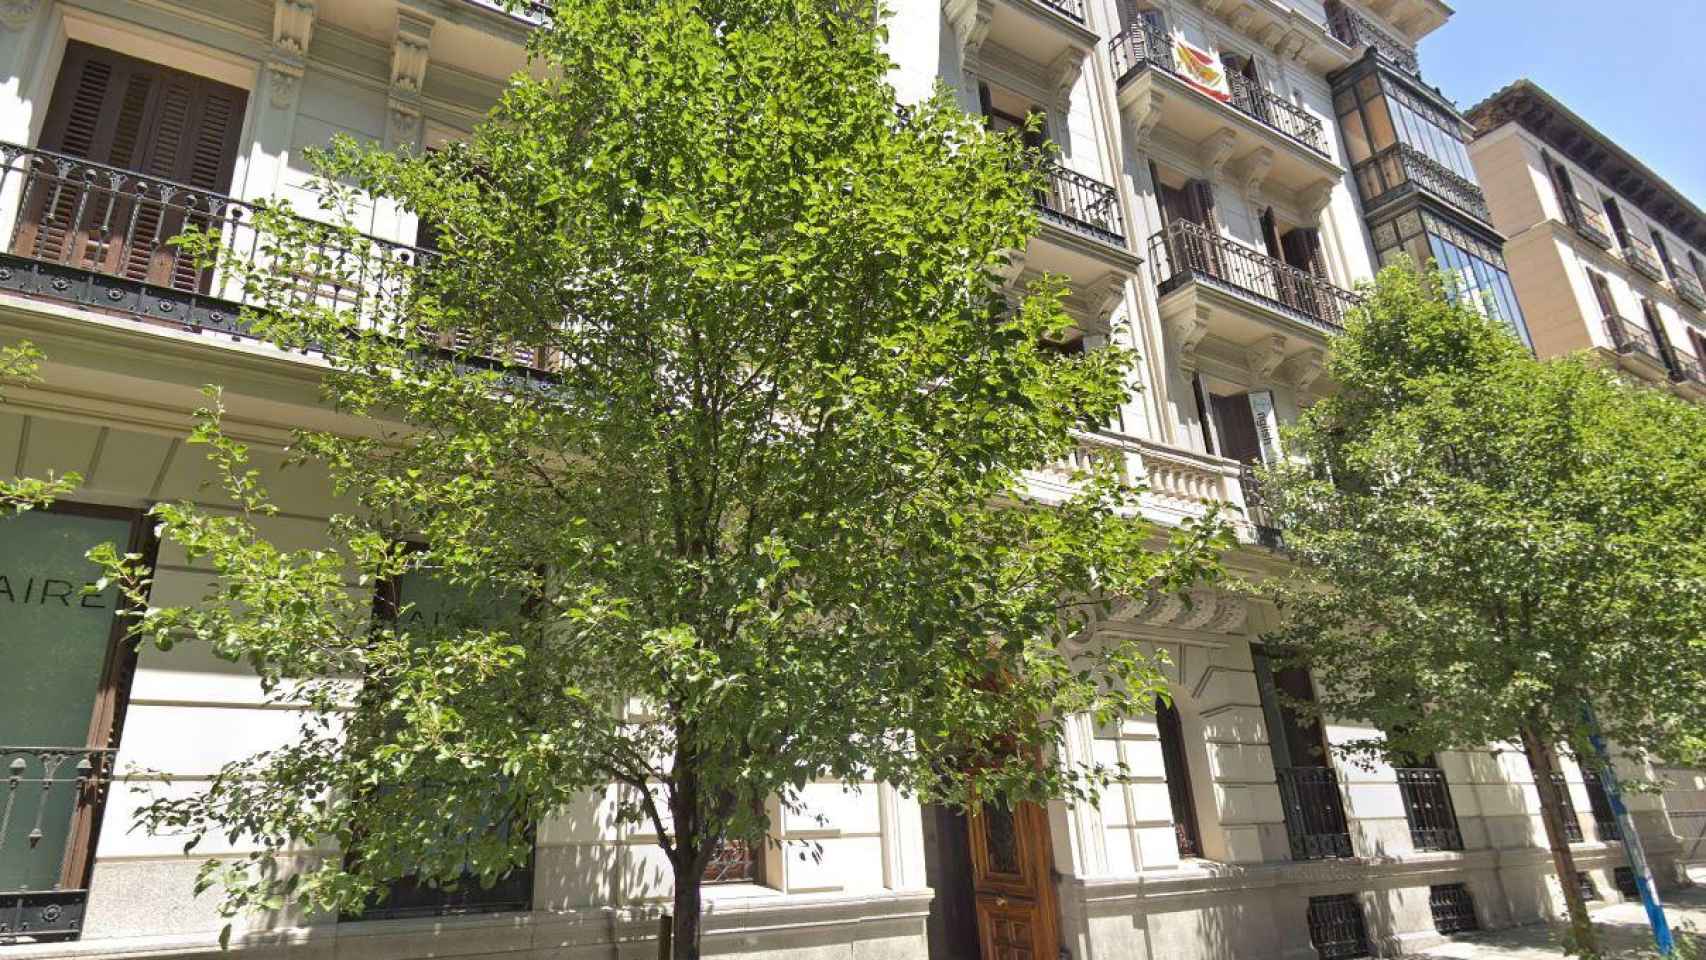 Sede de Patrimonios Inmobiliarios Zaragoza en la calle Conde de Aranda